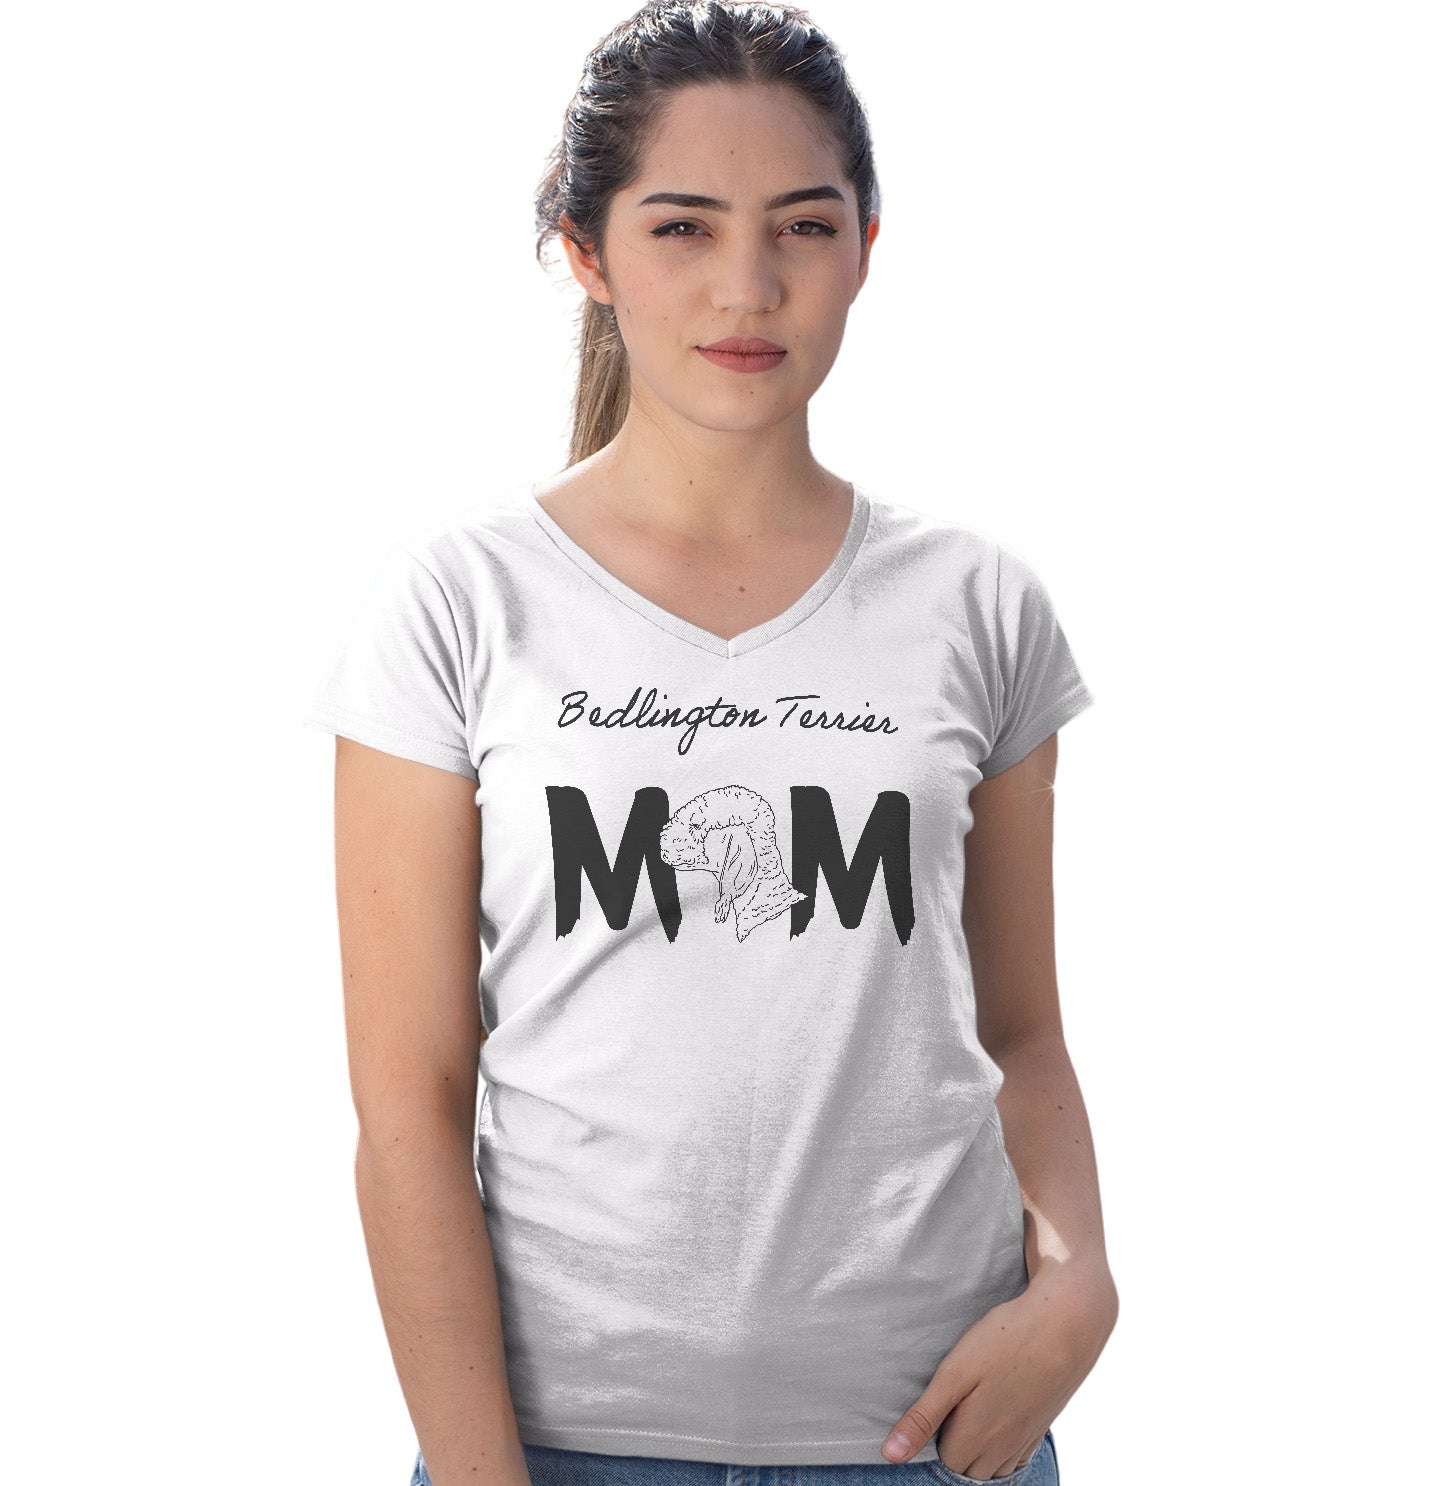 Bedlington Terrier Breed Mom - Women's V-Neck T-Shirt